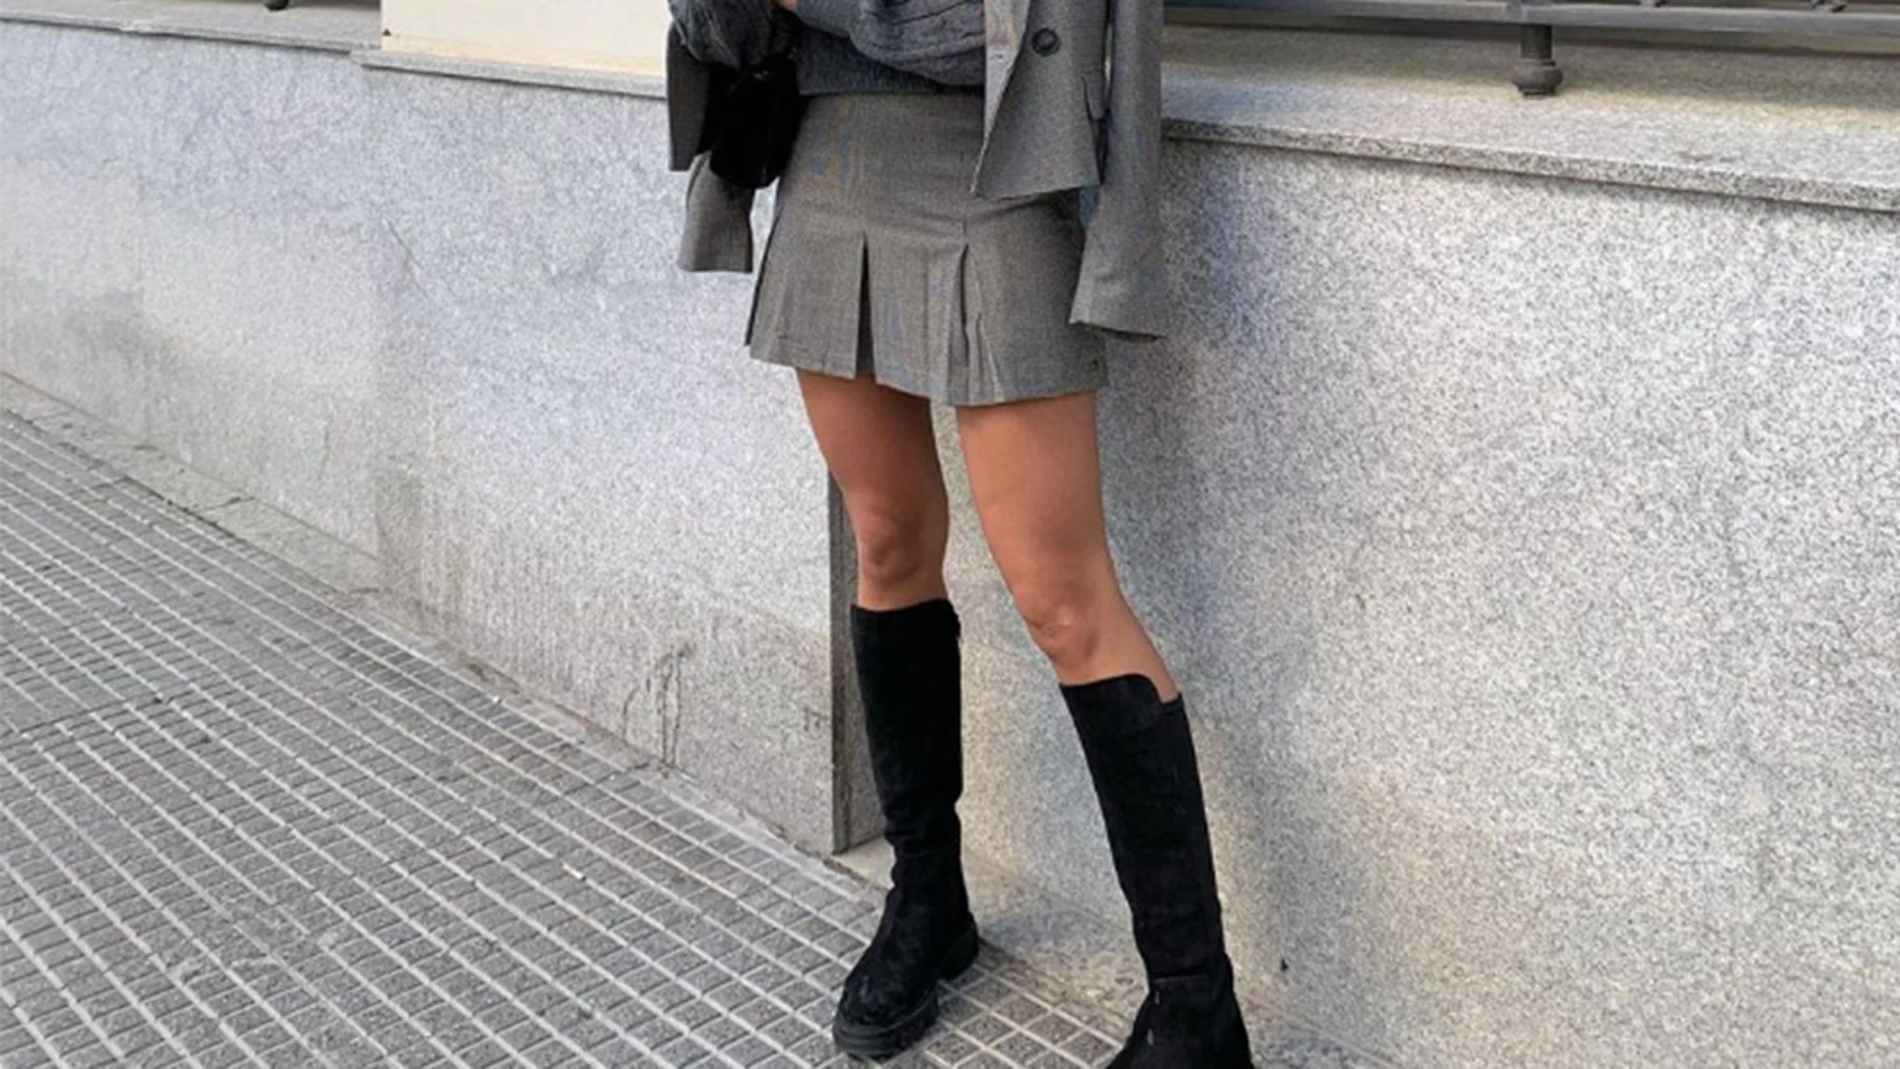 Minifalda y altas: cómo convertir un conjunto clásico en una versión minimalista y elegante